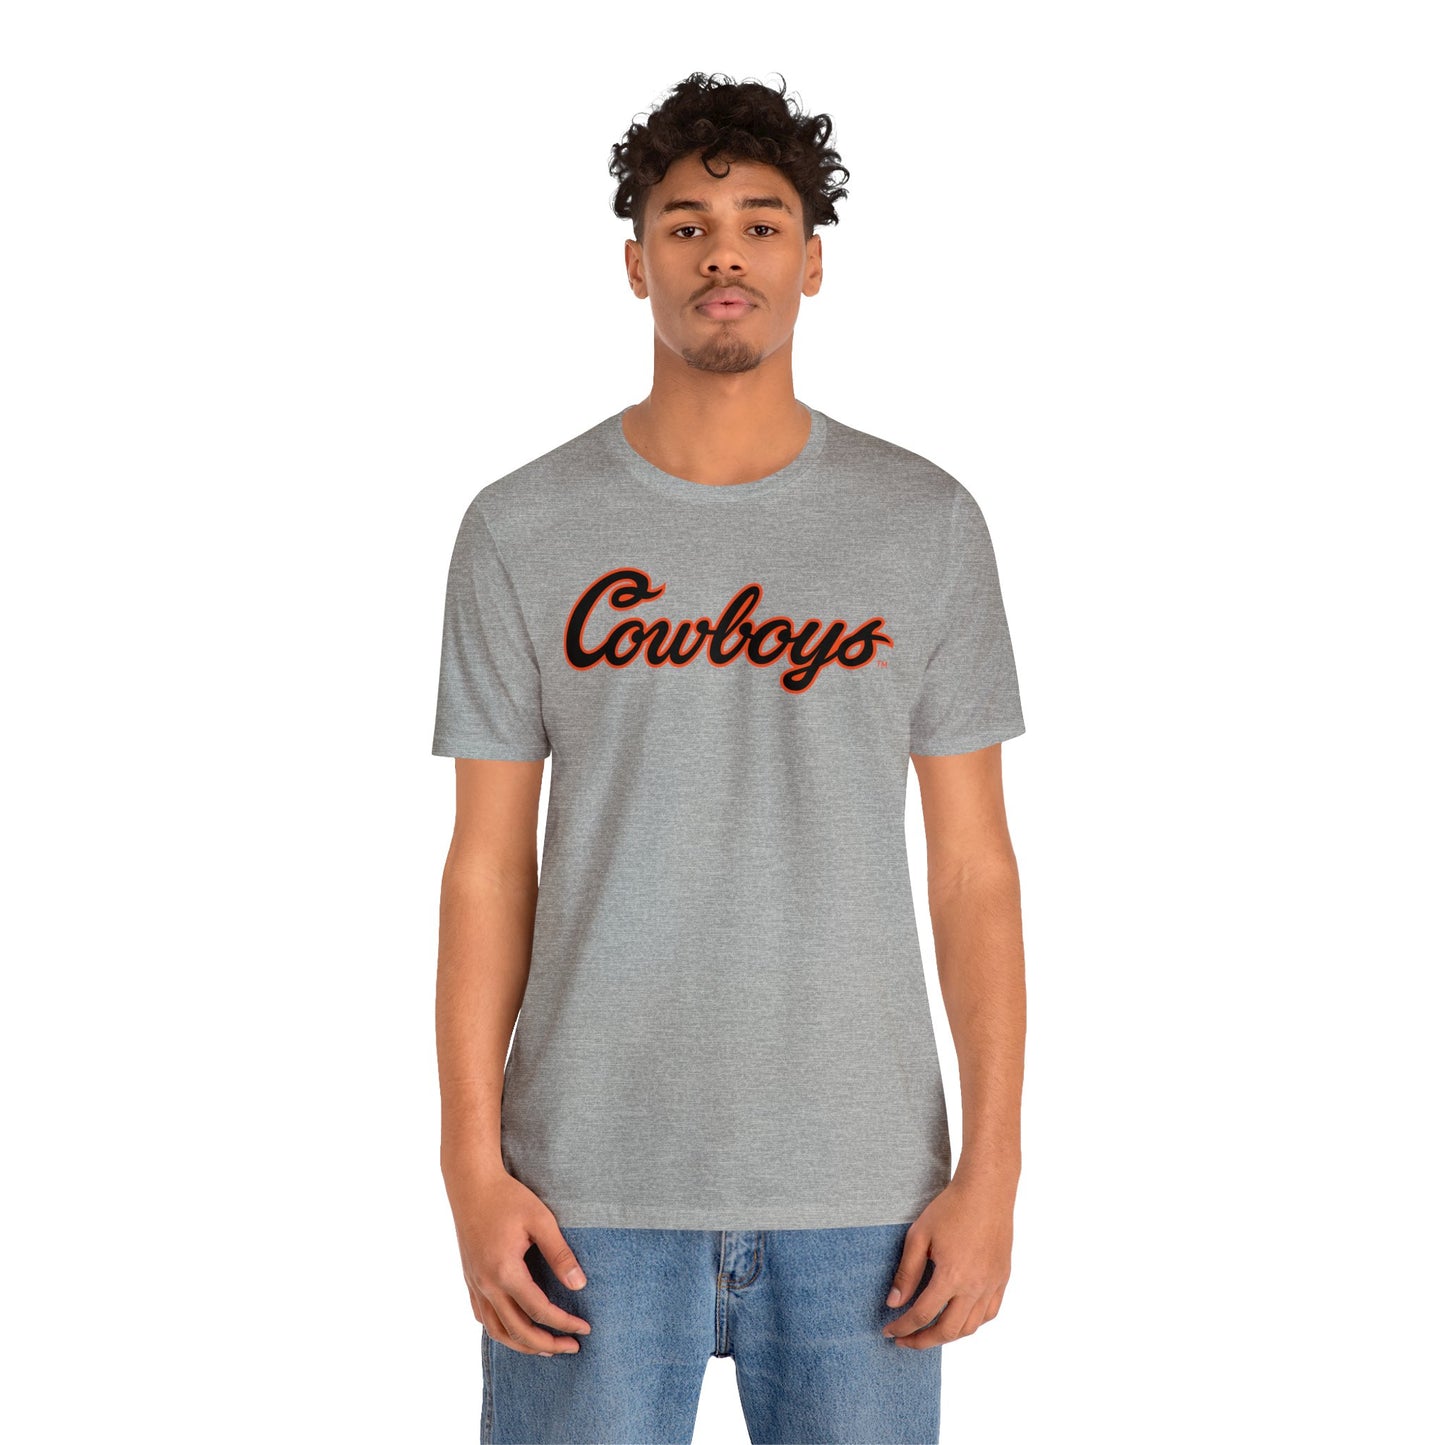 Dalton Cooper #71 Cursive Cowboys T-Shirt